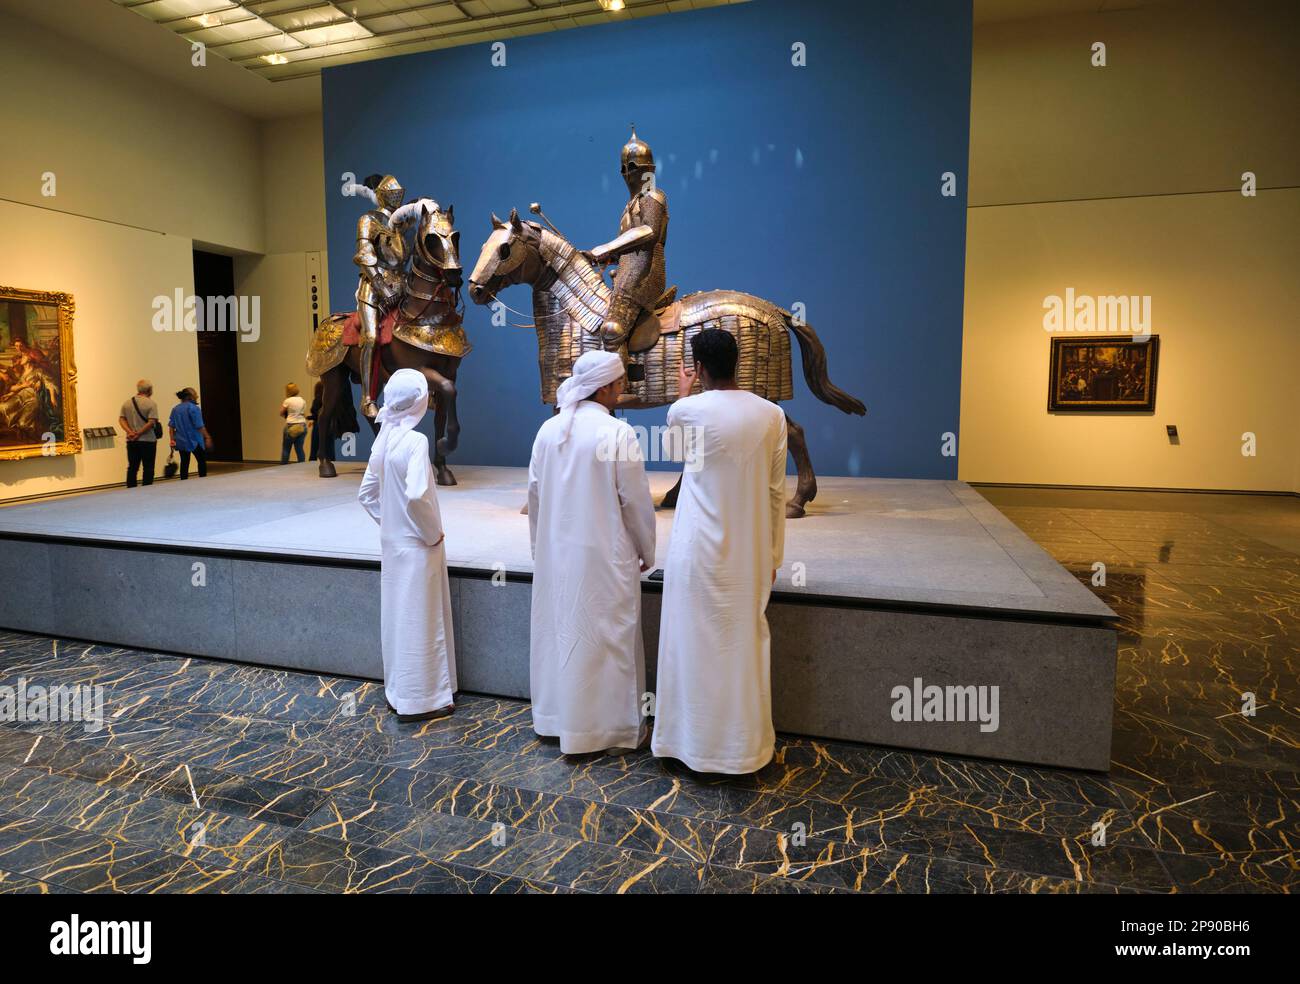 Eine Pferde- und Kriegerpanzerung in einem Galerieraum. Im Kunstmuseum des französischen Louvre in Abu Dhabi, Vereinigte Arabische Emirate. Stockfoto